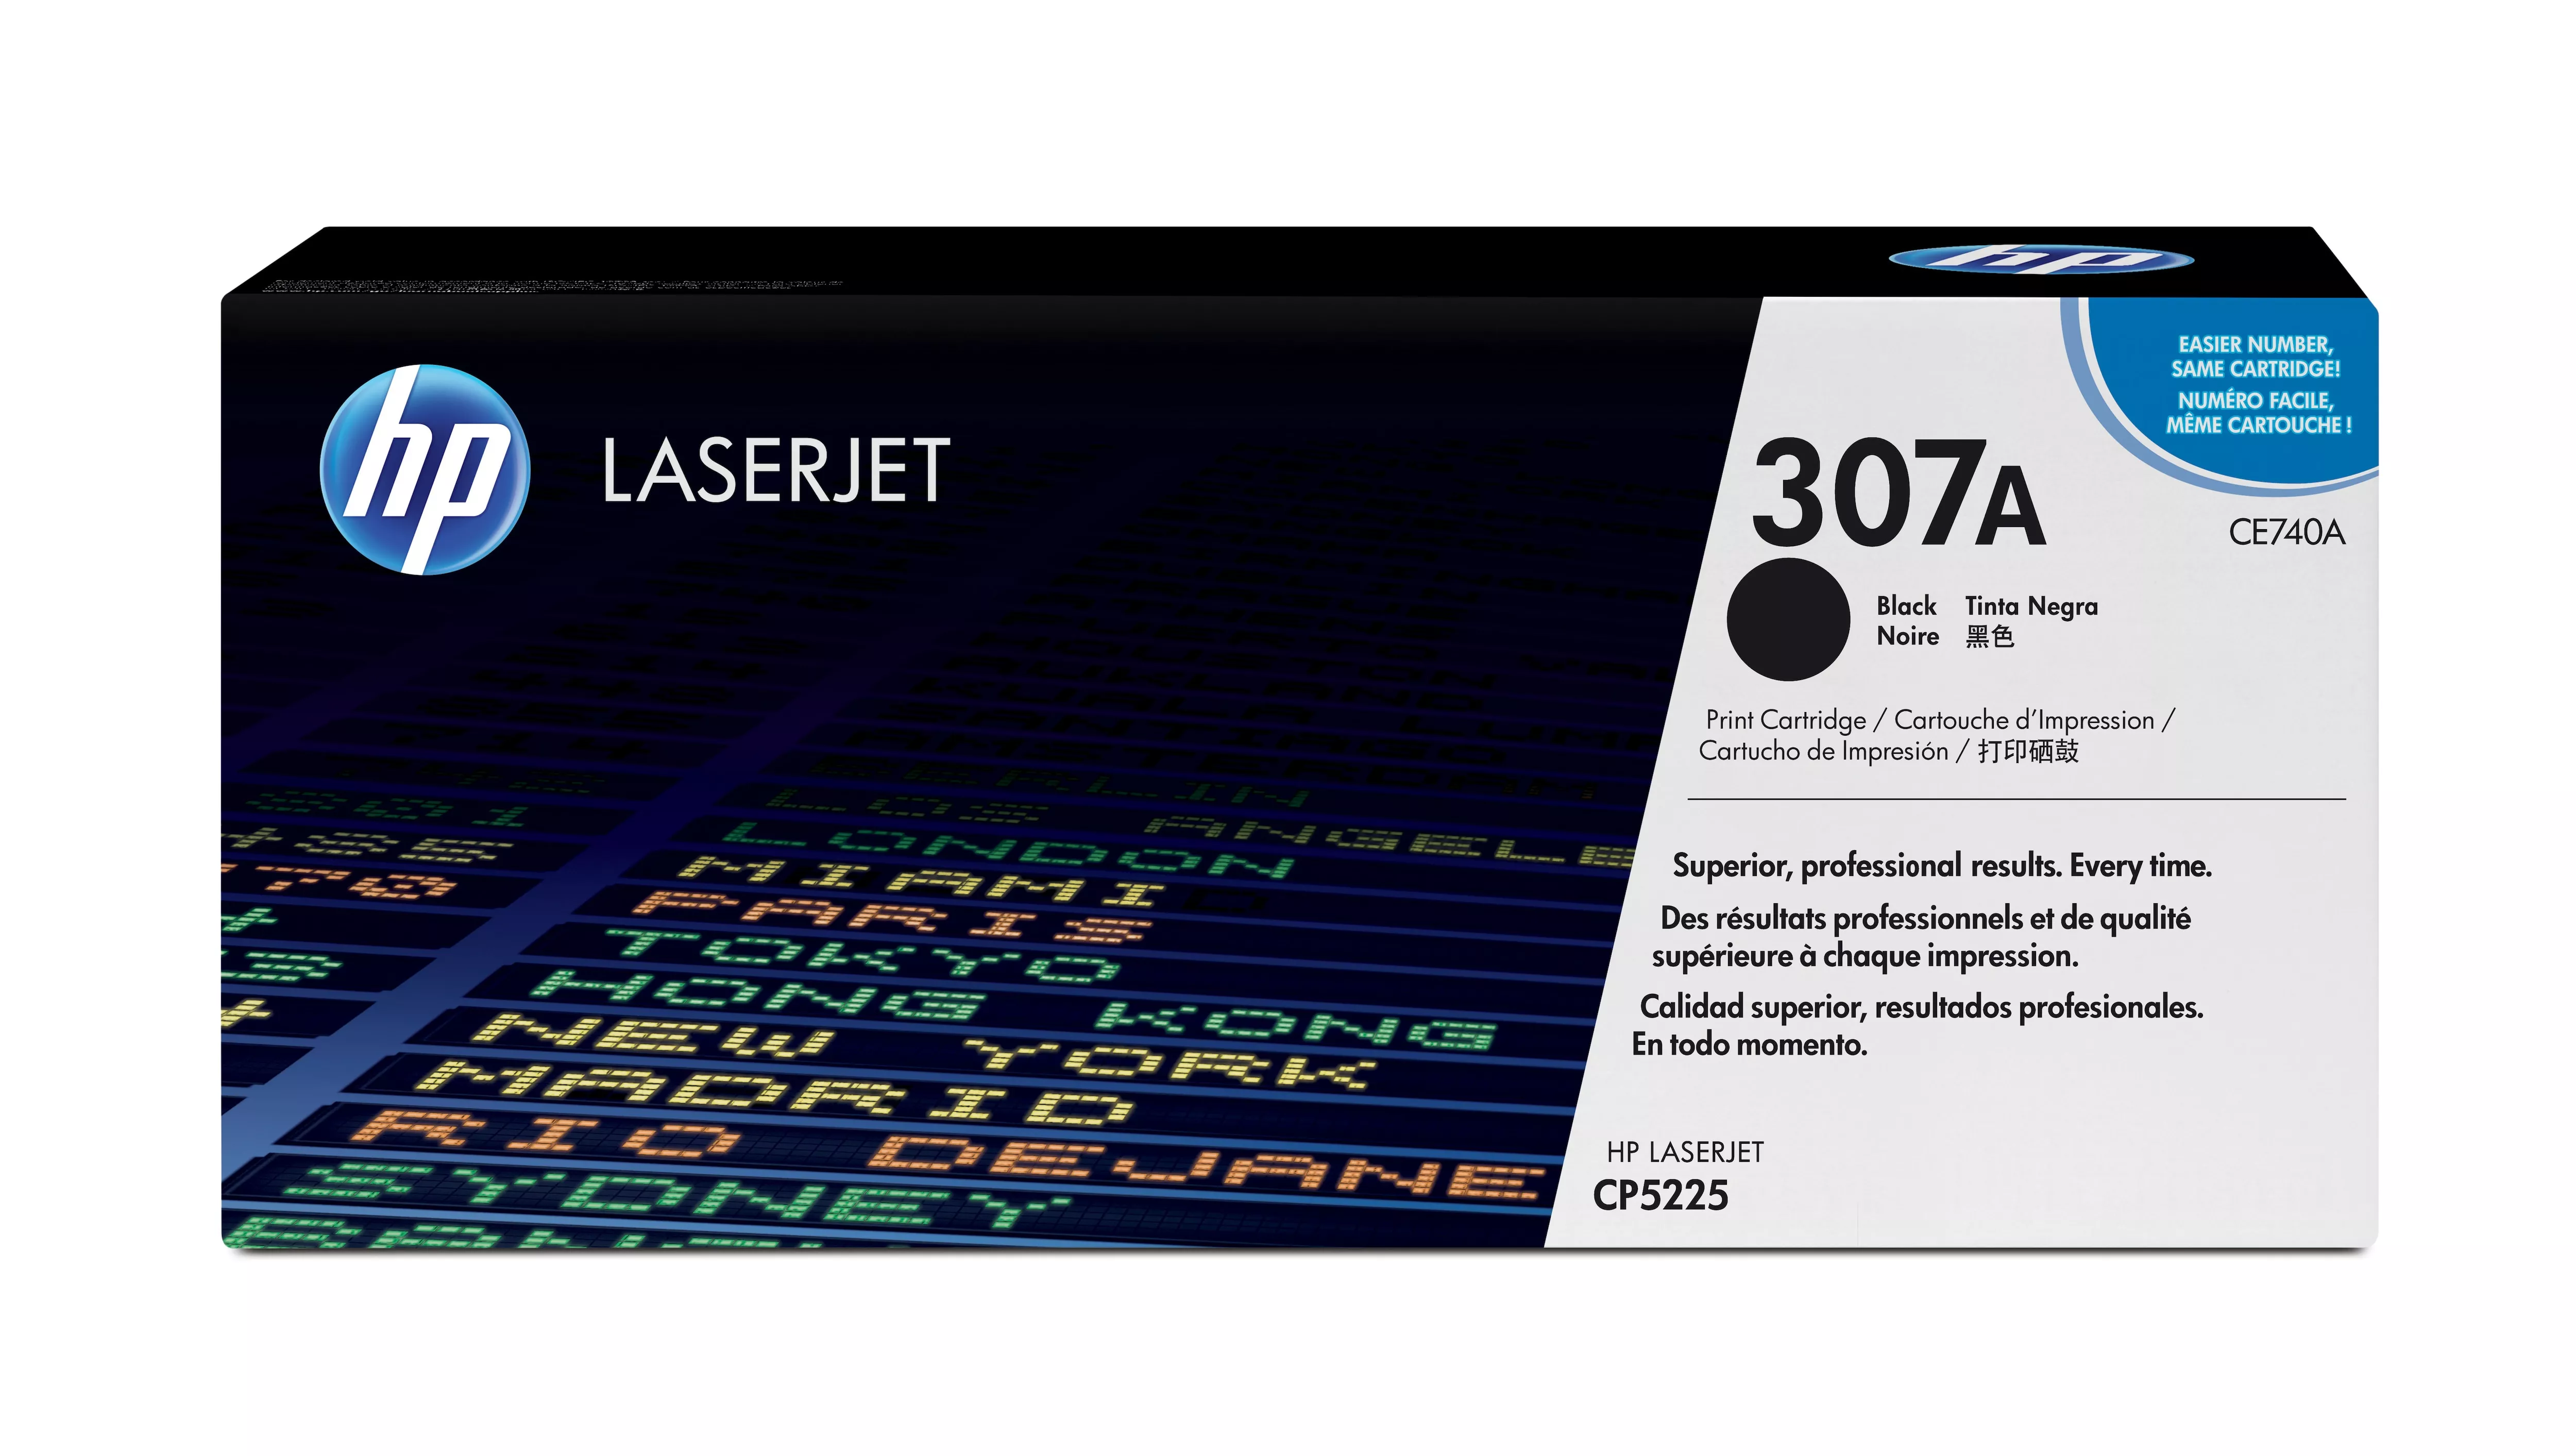 Achat Toner HP original Colour Laserjet CE740A Toner cartridge black sur hello RSE